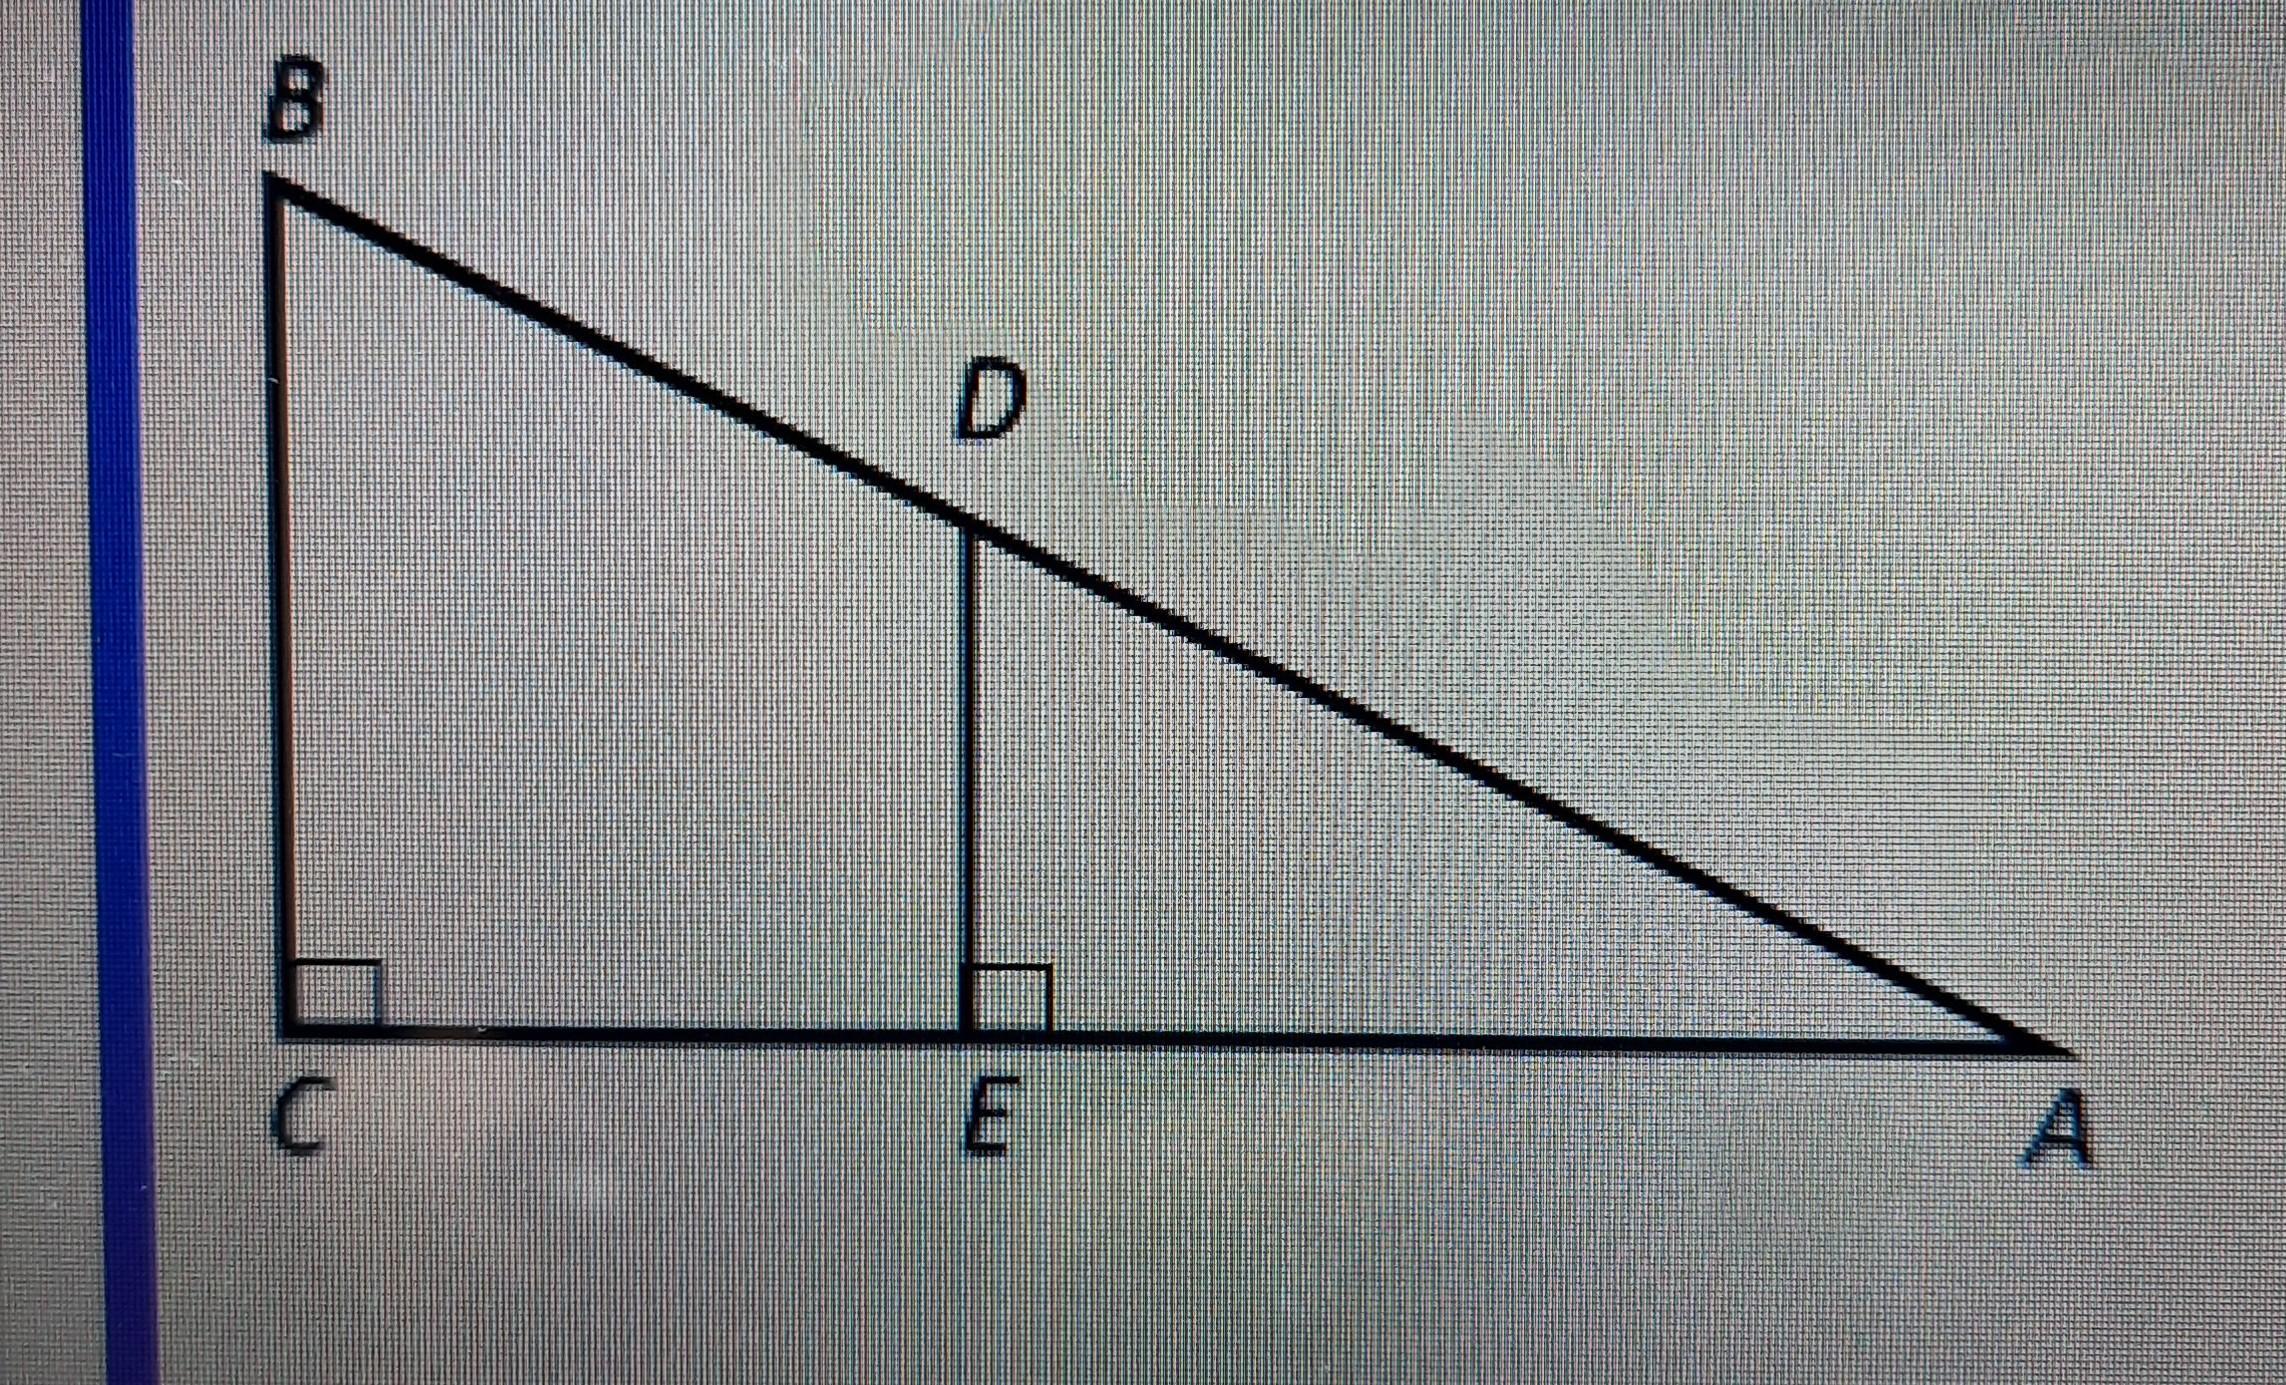 250 150 90 найдите ее пятый. Известно что ае 12 см. На рисунке 122 ц е равен е д б е равен е ф и к. В треугольнике ДФЕ угол е равен 90 градусов ДФ 18 косд 2\9. На рисунке 79 а в е равно св г есть ли ещё на этом рисунке равные.